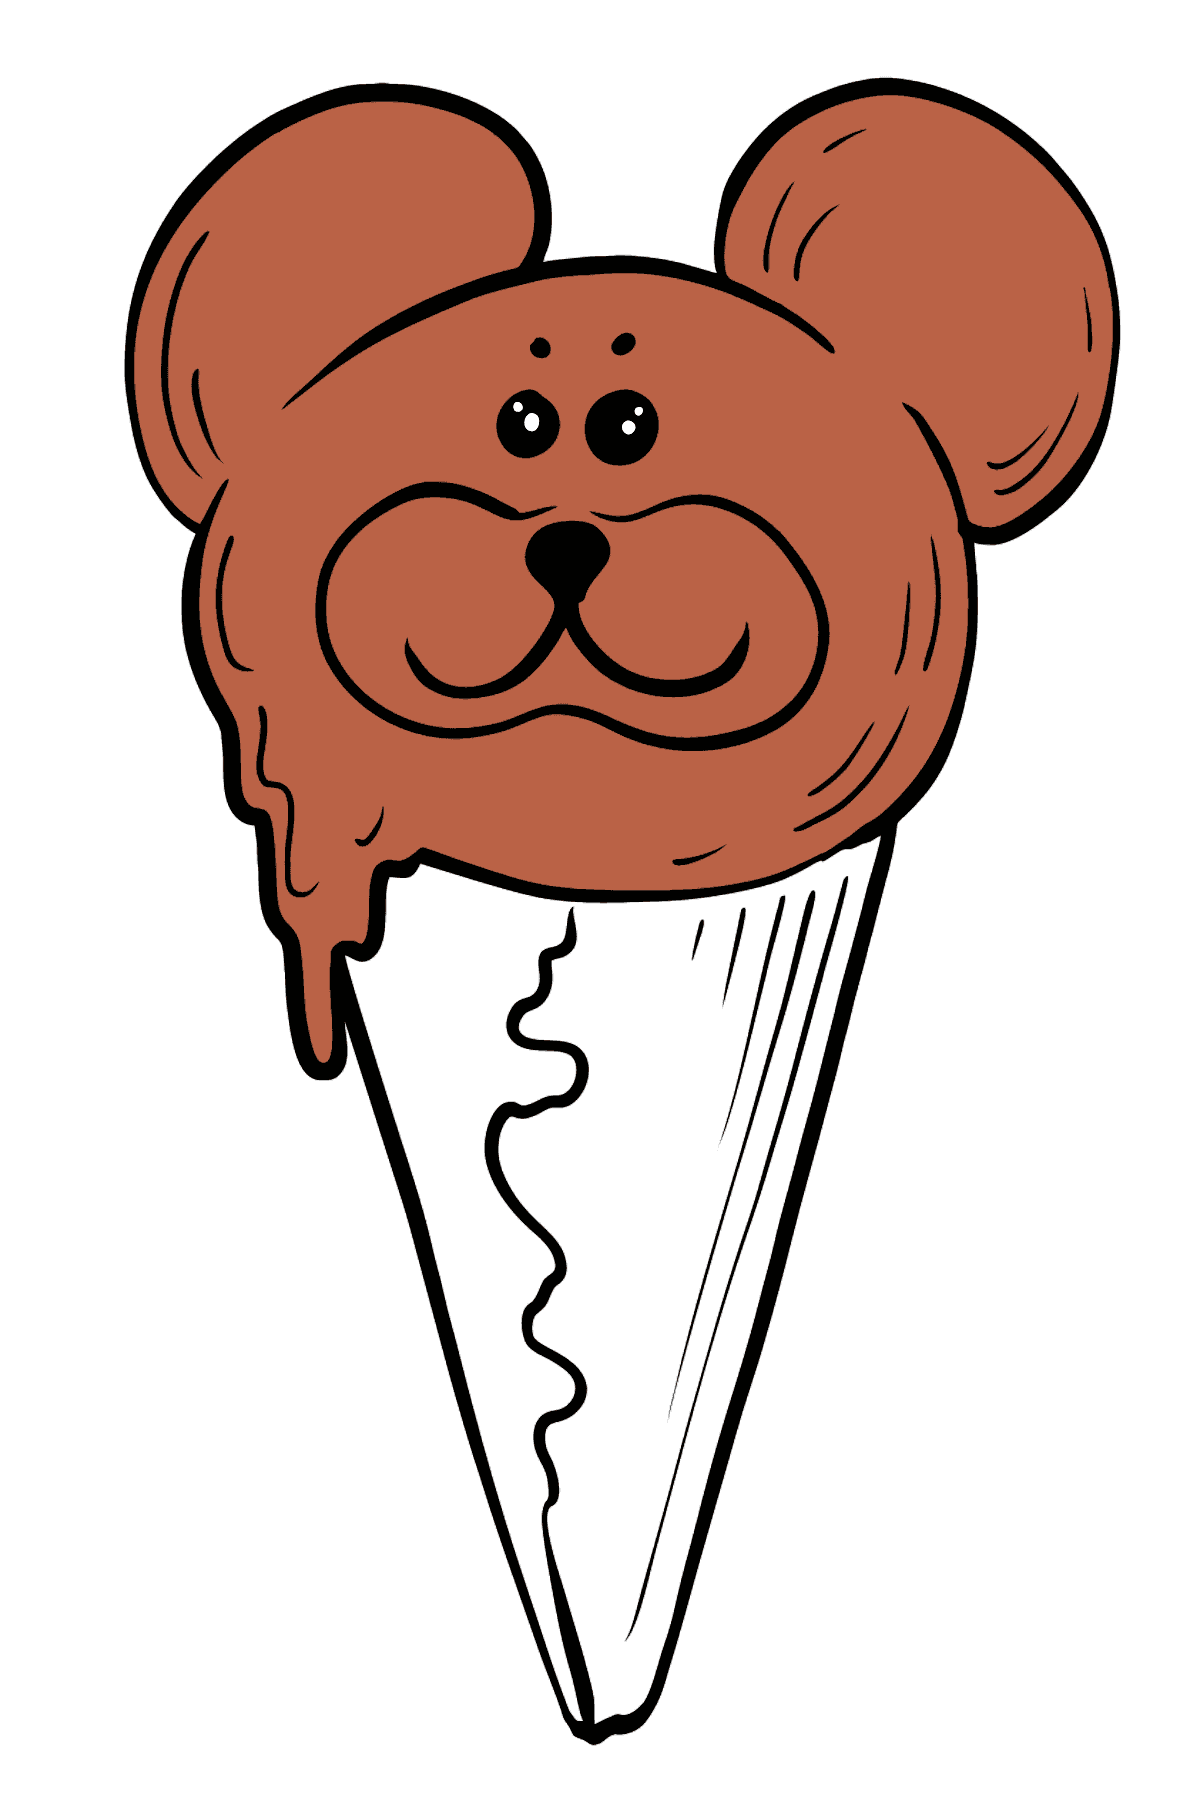 Omalovánka čokoládová zmrzlina - Omalovánky pro děti